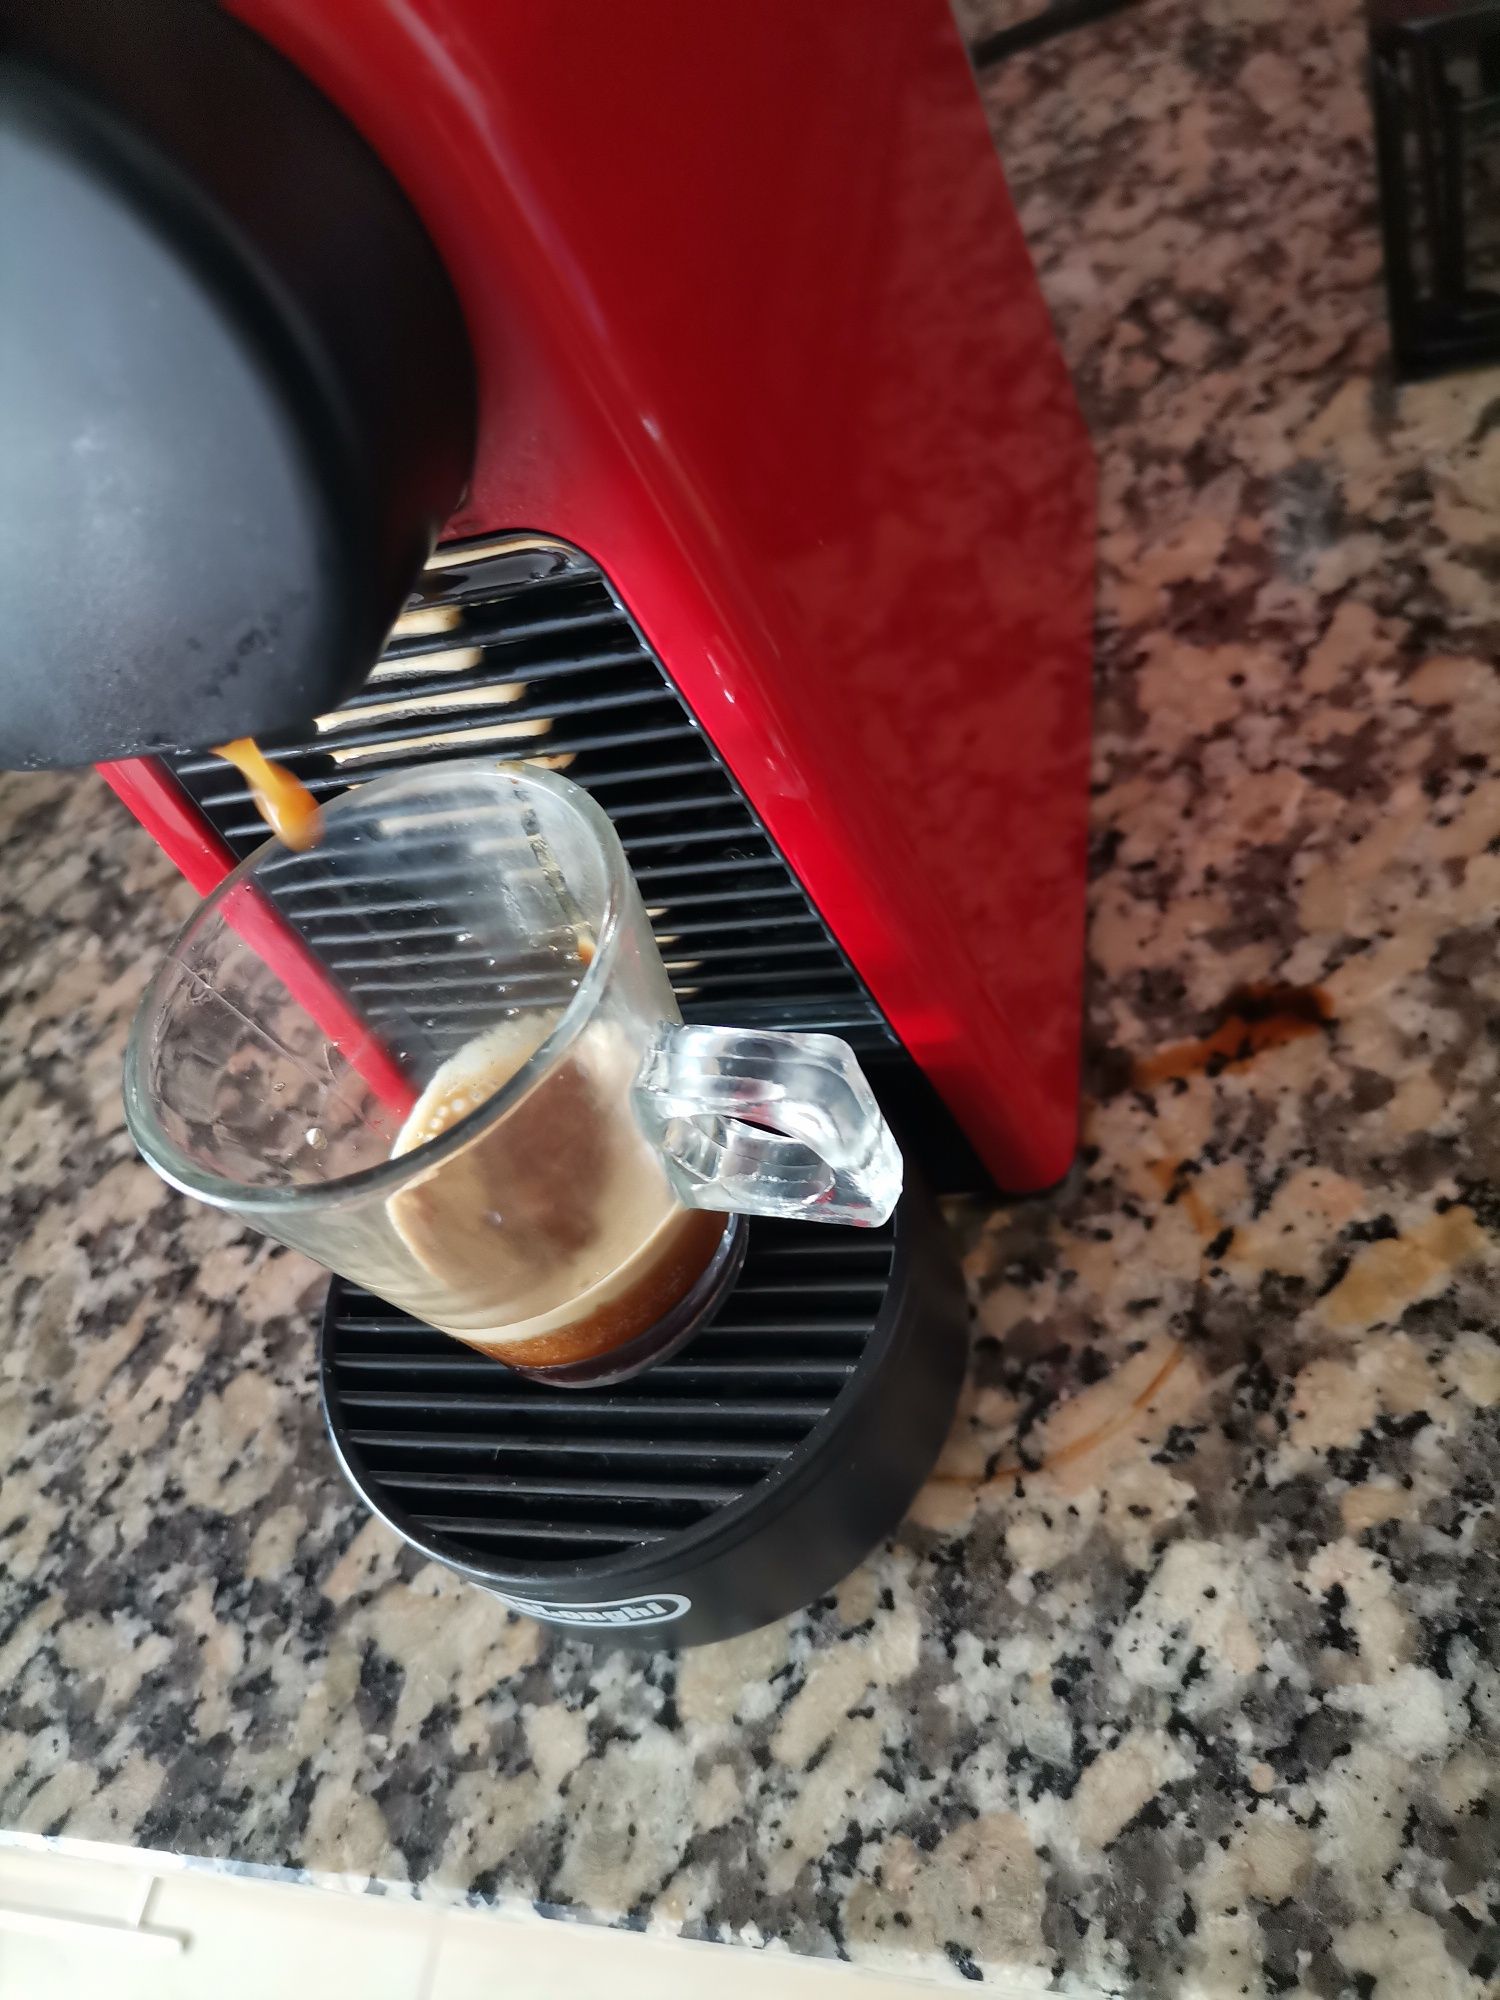 Vendo Máquina de Café Nespresso DeLonghi (COM PROBLEMA) + OFERTA